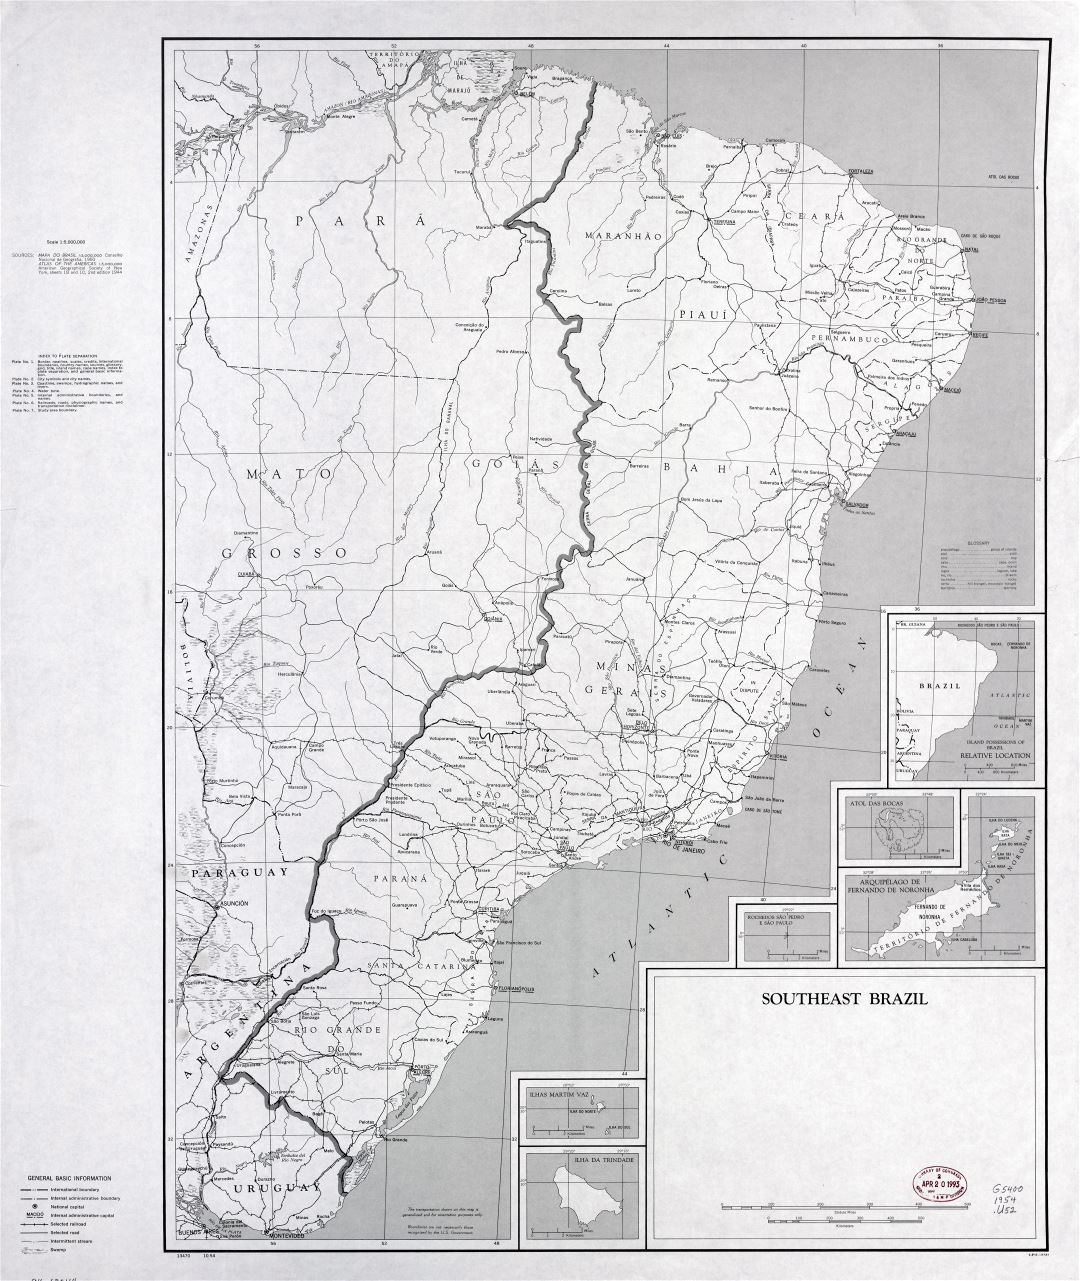 Grande detallado mapa del Sudeste de Brasil con otras marcas - 1954